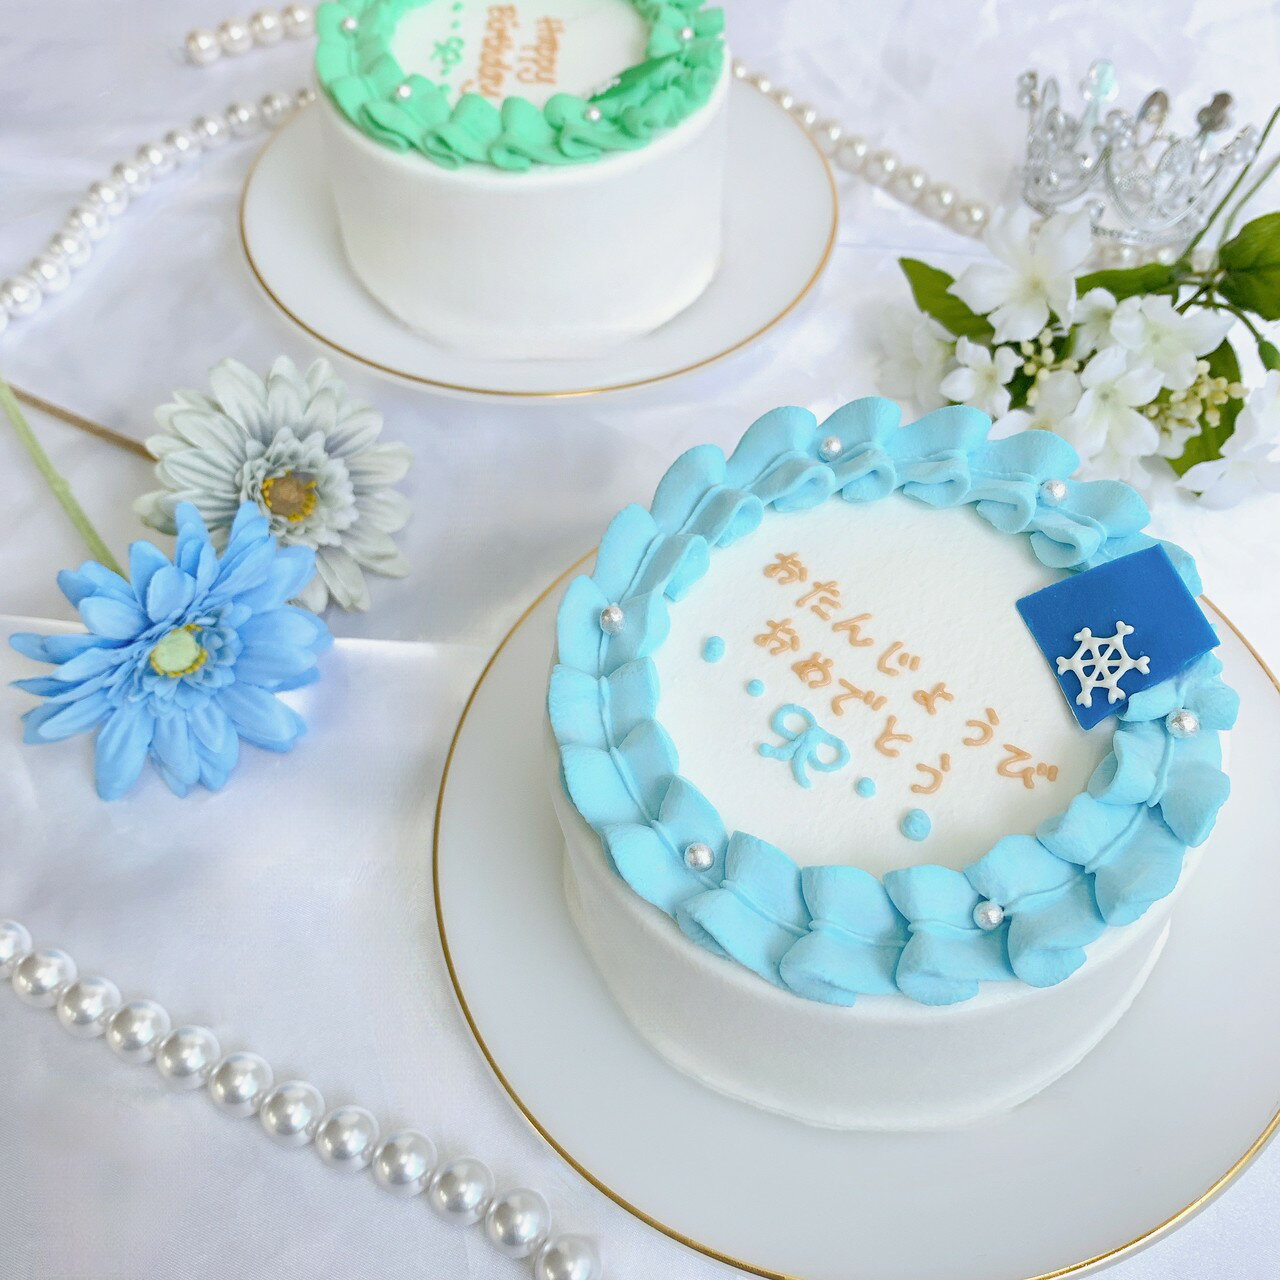 おしゃれなケーキ 《選べる8色&お好きなメッセージ》 雪だるま センイルケーキ 6号（4〜5名様向け）【 誕生日ケーキ センイルケーキ かわいい おしゃれ お祝い 記念日 インスタ映え ケーキ スイーツ ホールケーキ おもしろ ケーキ サプライズ ケーキ ギフト プレゼント 贈り物 】